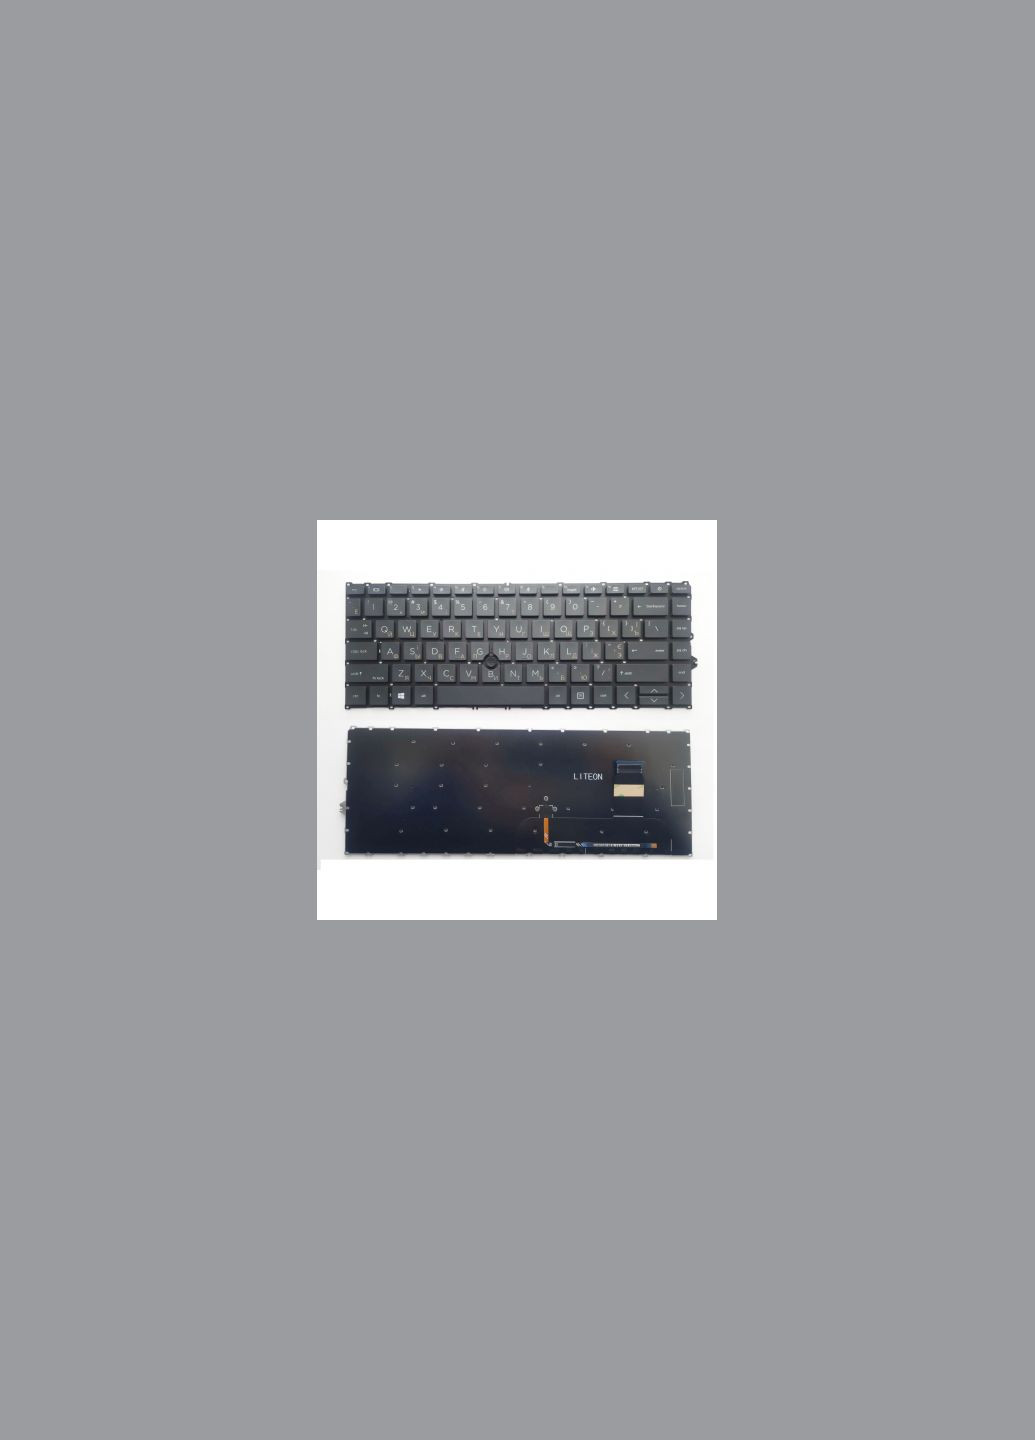 Клавиатура ноутбука EliteBook 745 G7/G8, 840 G7/G8 черная из ТП UA (A46209) HP elitebook 745 g7/g8, 840 g7/g8 черна з тп ua (278368756)